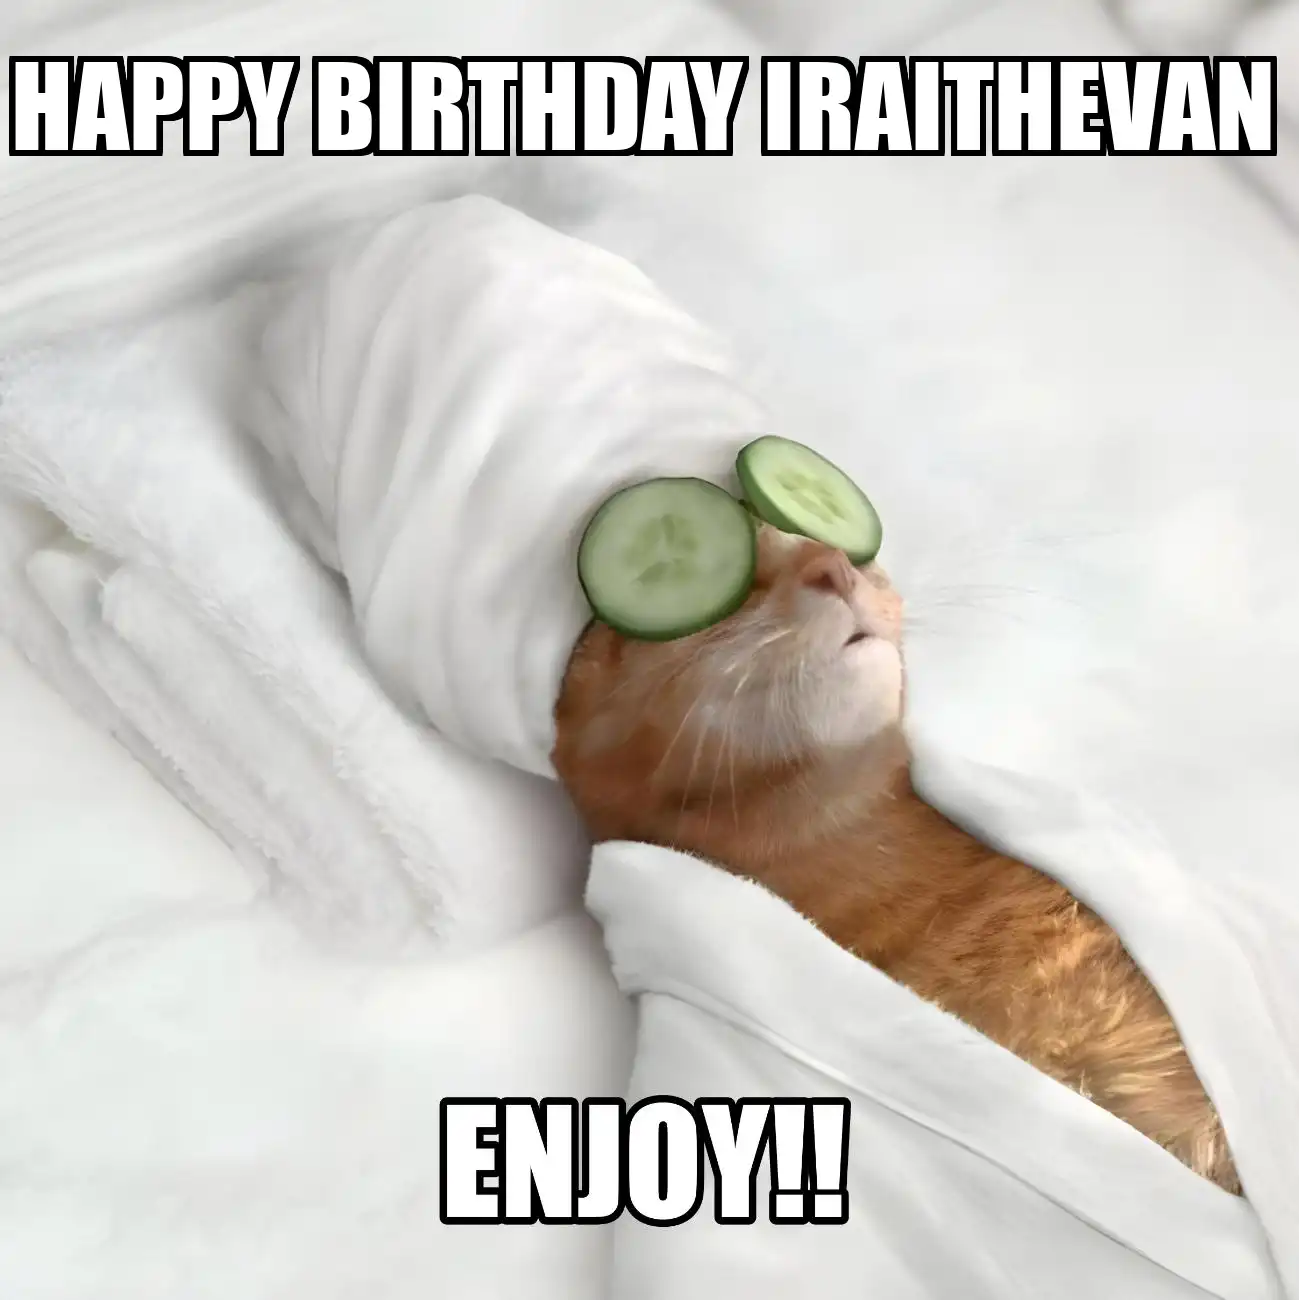 Happy Birthday Iraithevan Enjoy Cat Meme